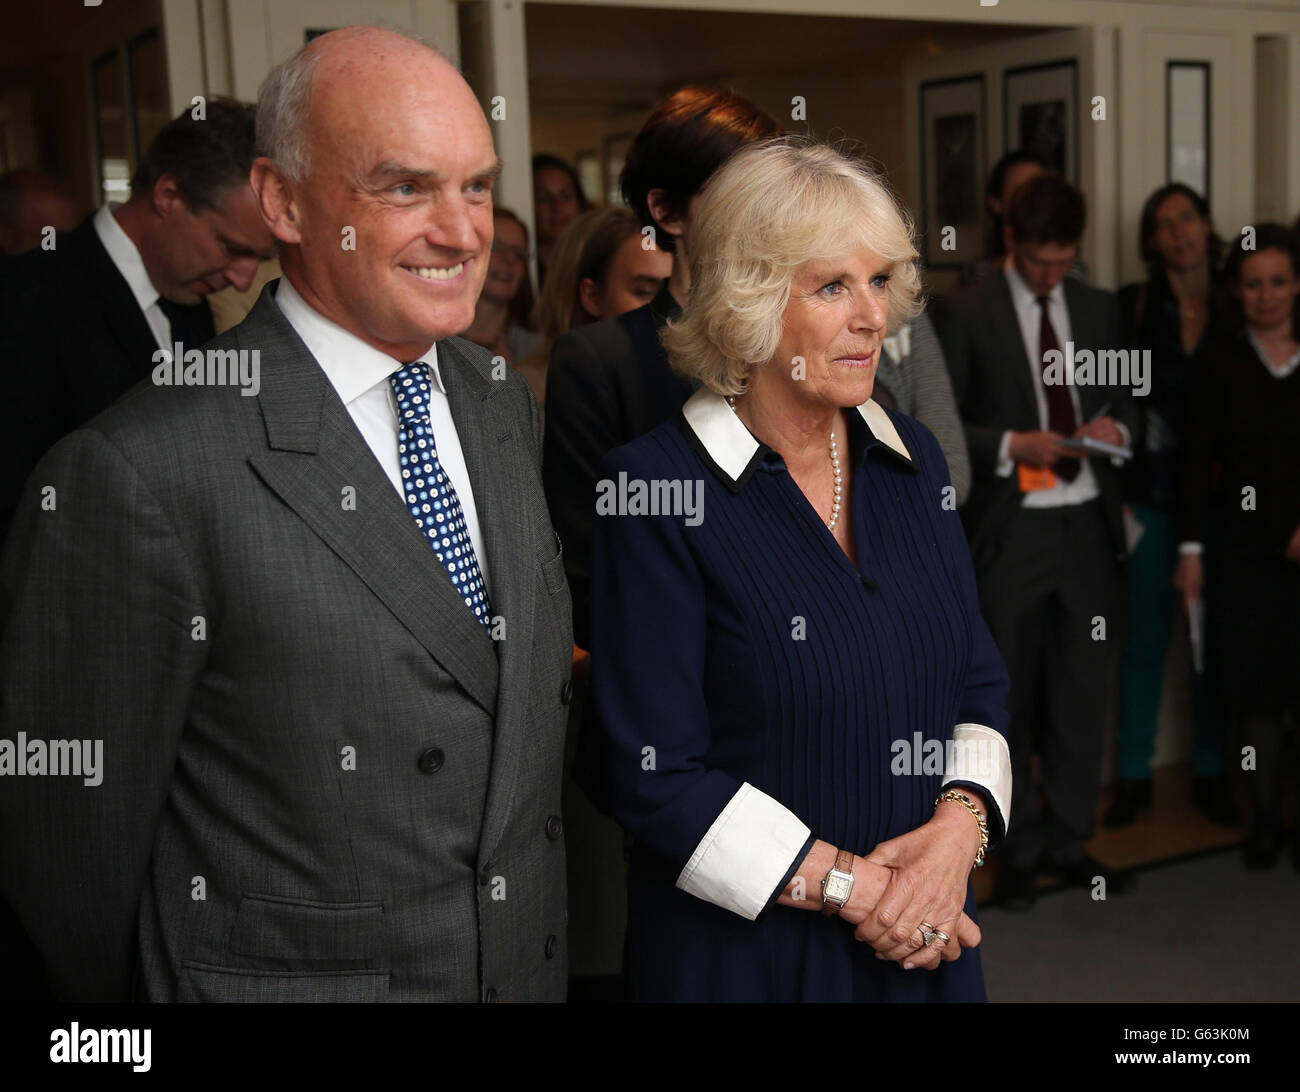 La duquesa de Cornwall está con Nicholas Coleridge, Presidente de Conde Nast International durante una fiesta de té de caridad para los partidarios de Maggie's Centers en Vogue House, Londres. Foto de stock